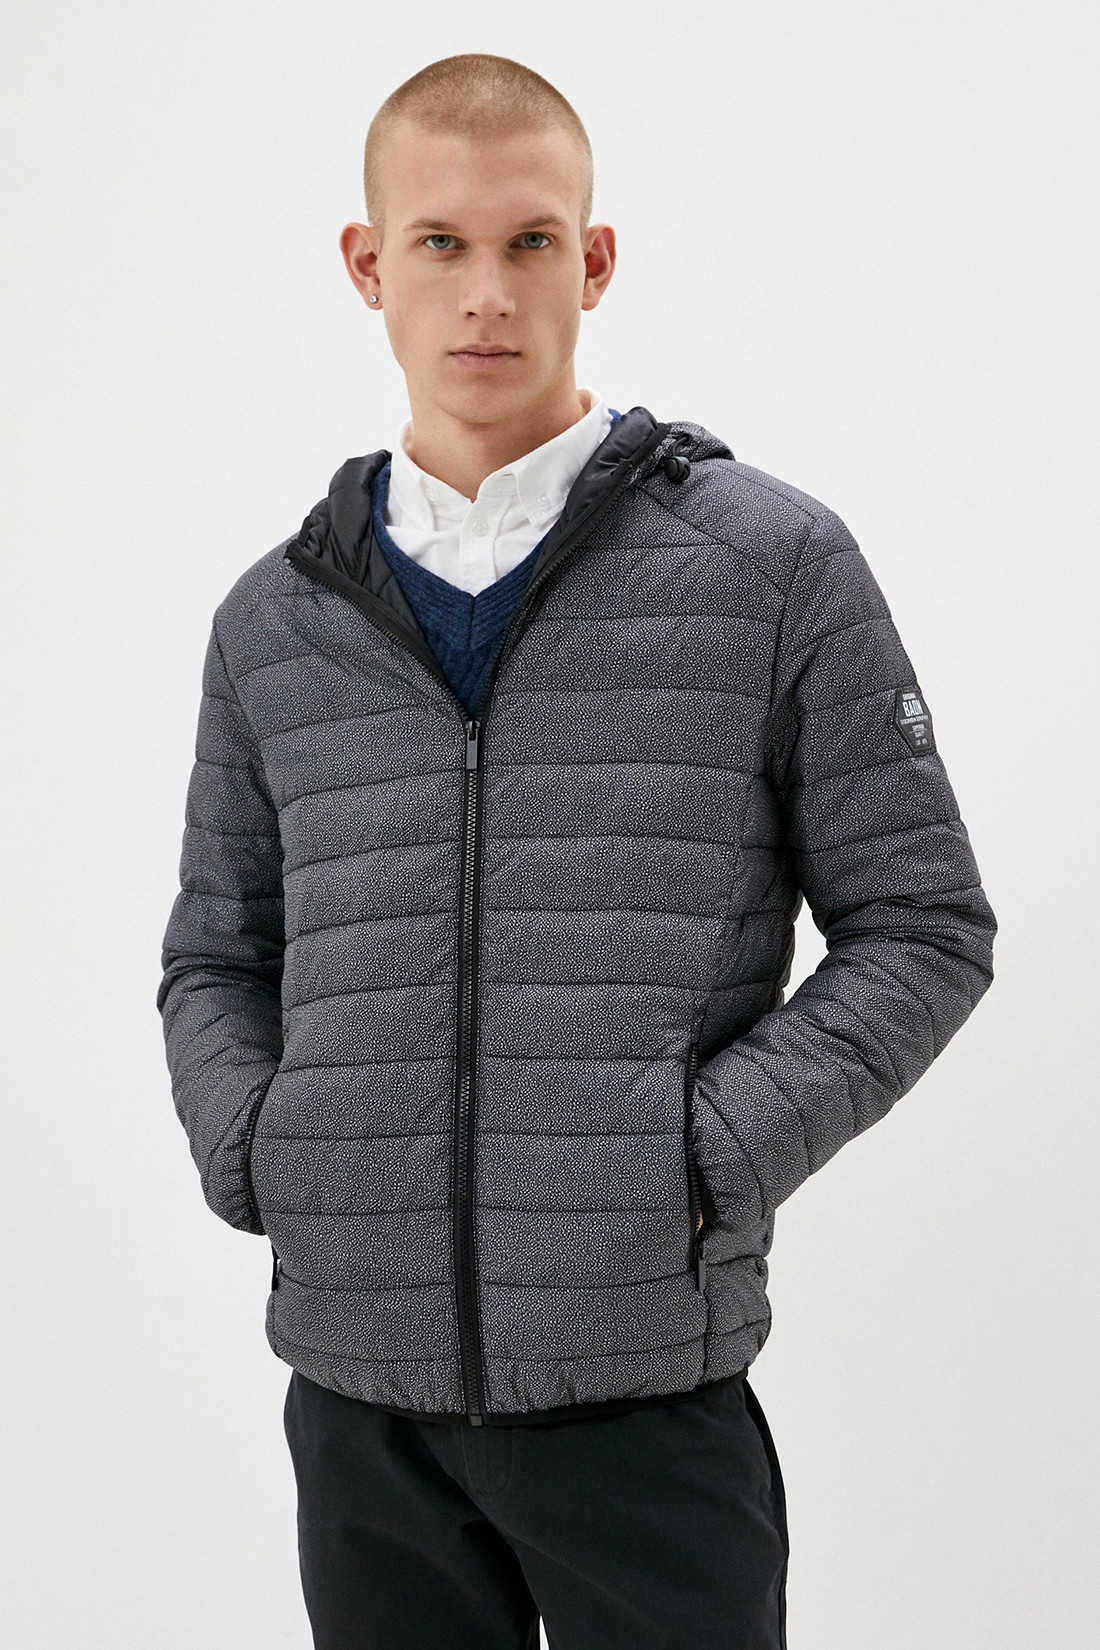 Куртка (Эко пух) (арт. baon B540519), размер M, цвет asphalt printed#серый Куртка (Эко пух) (арт. baon B540519) - фото 1